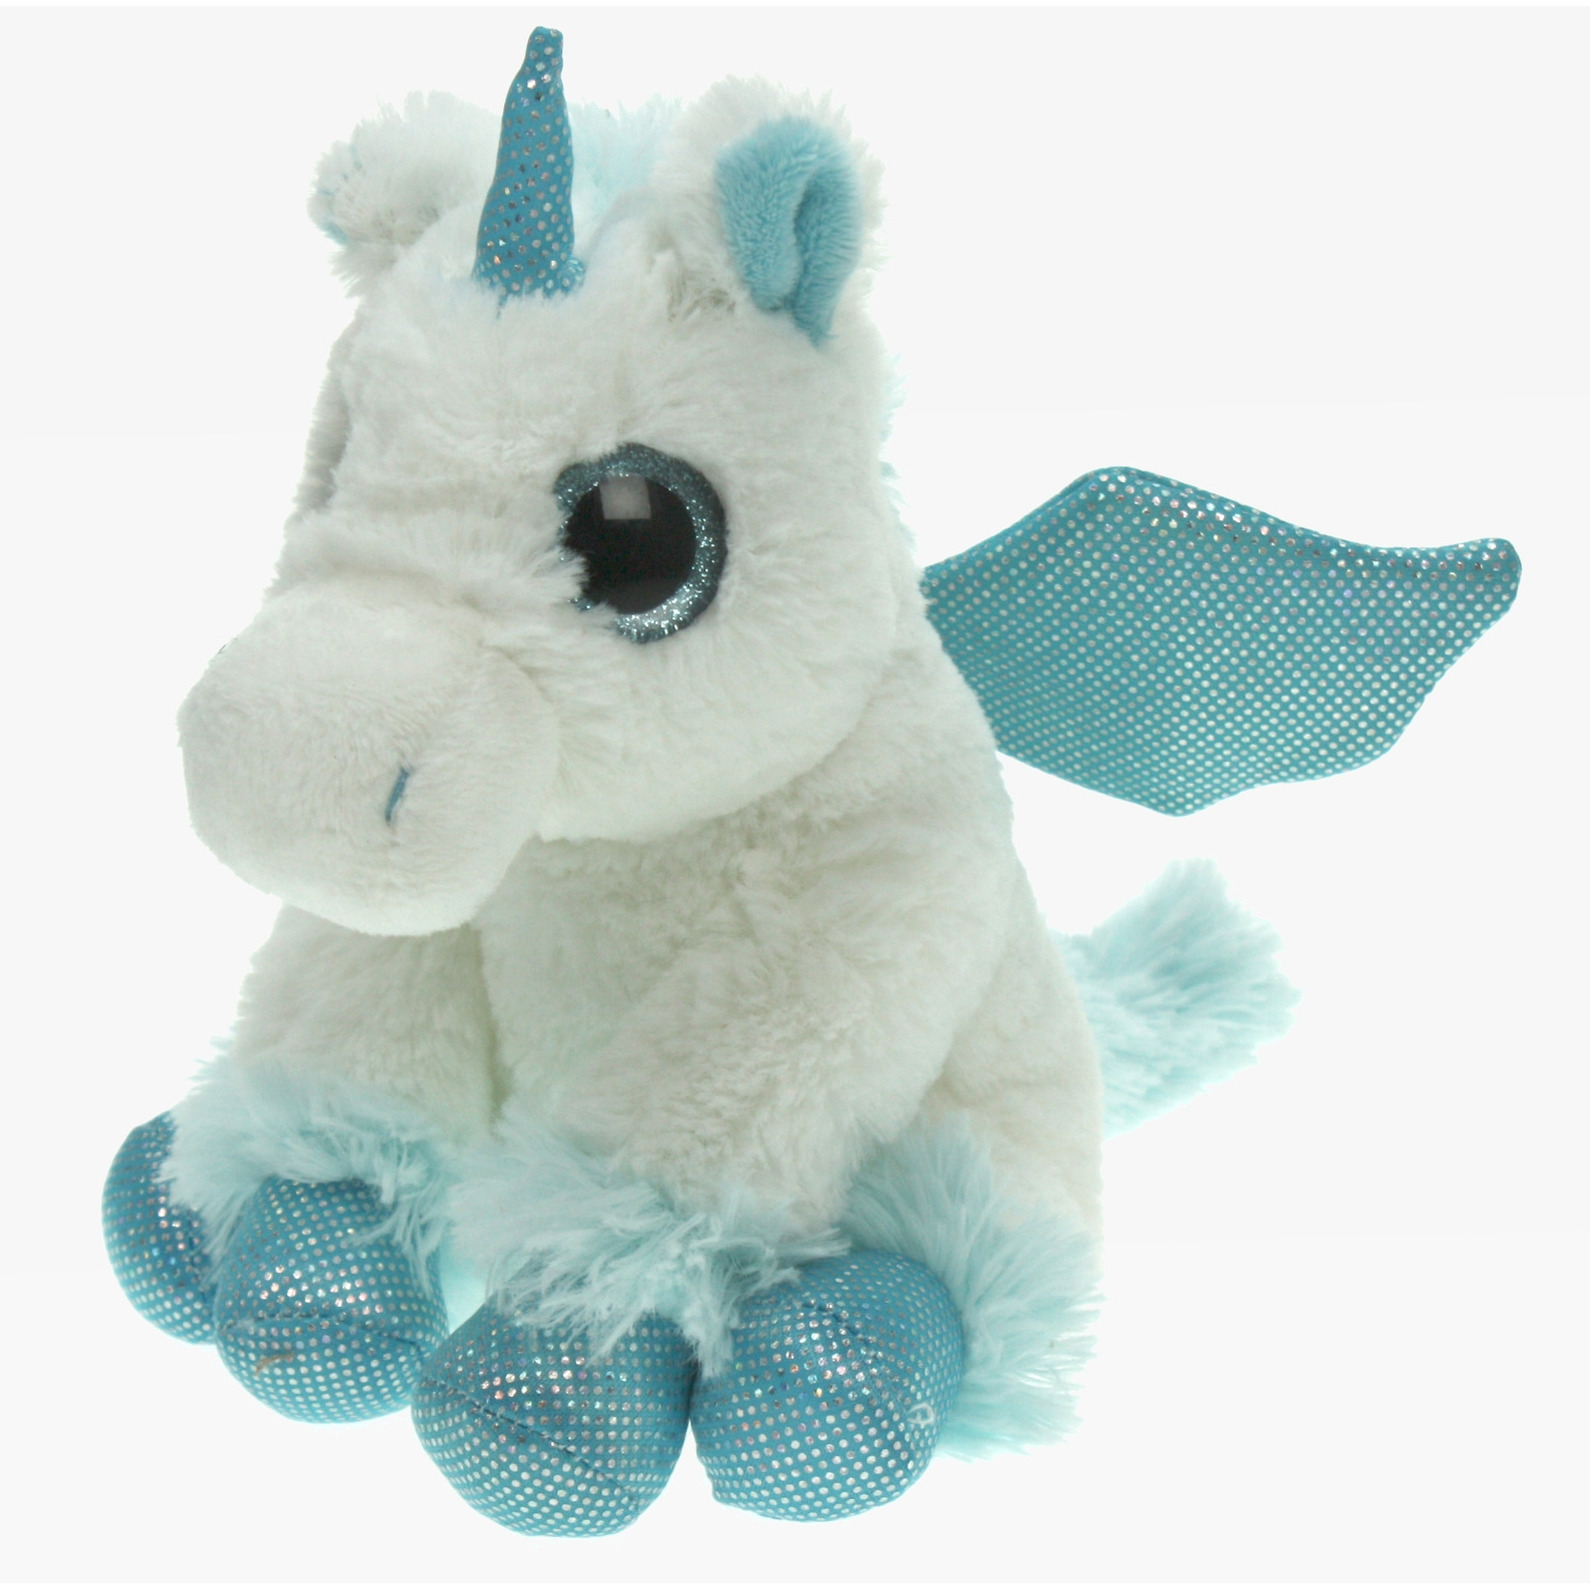 Pluche knuffel dieren Unicorn/eenhoorn wit/blauw van 20 cm